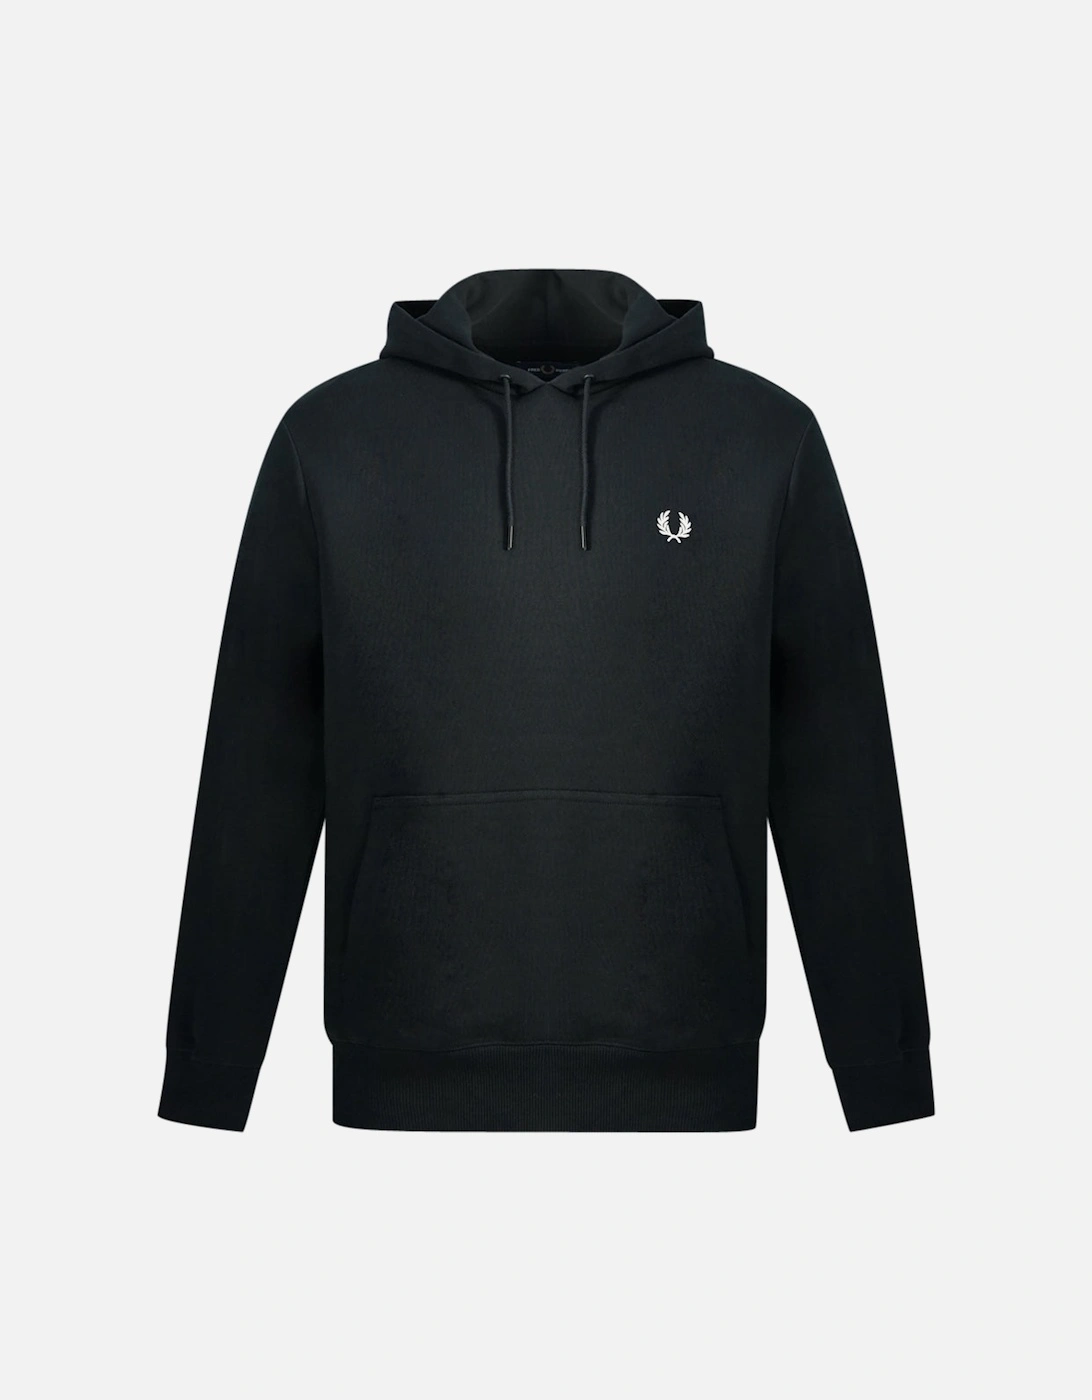 Pixel Print Black Hooded Sweatshirt, 3 of 2